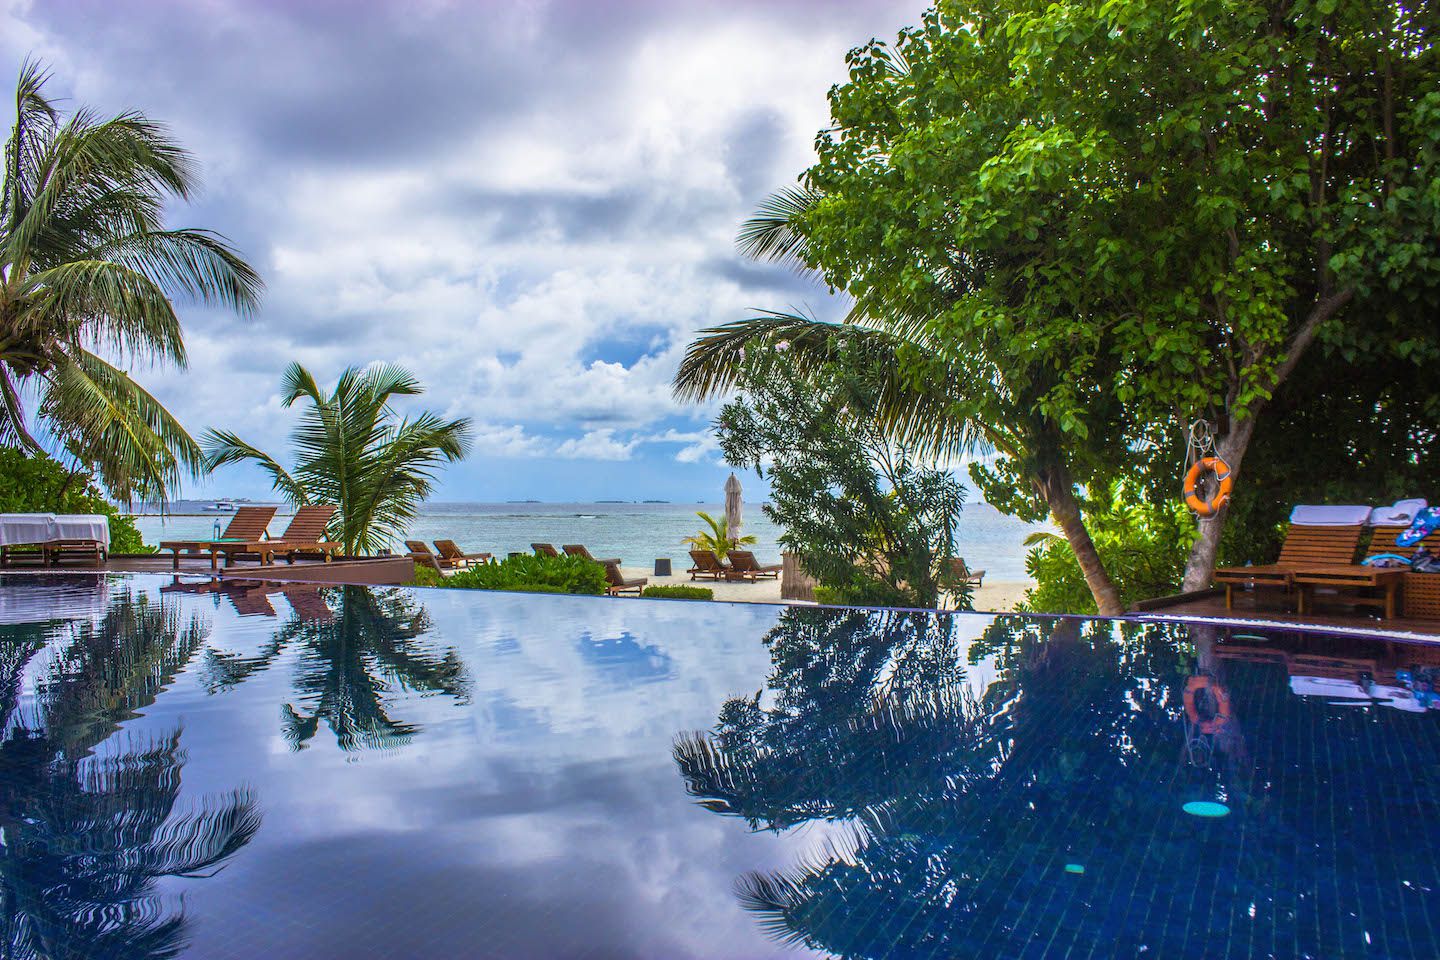 Infinity pool at Vadoo Resort, Maldives